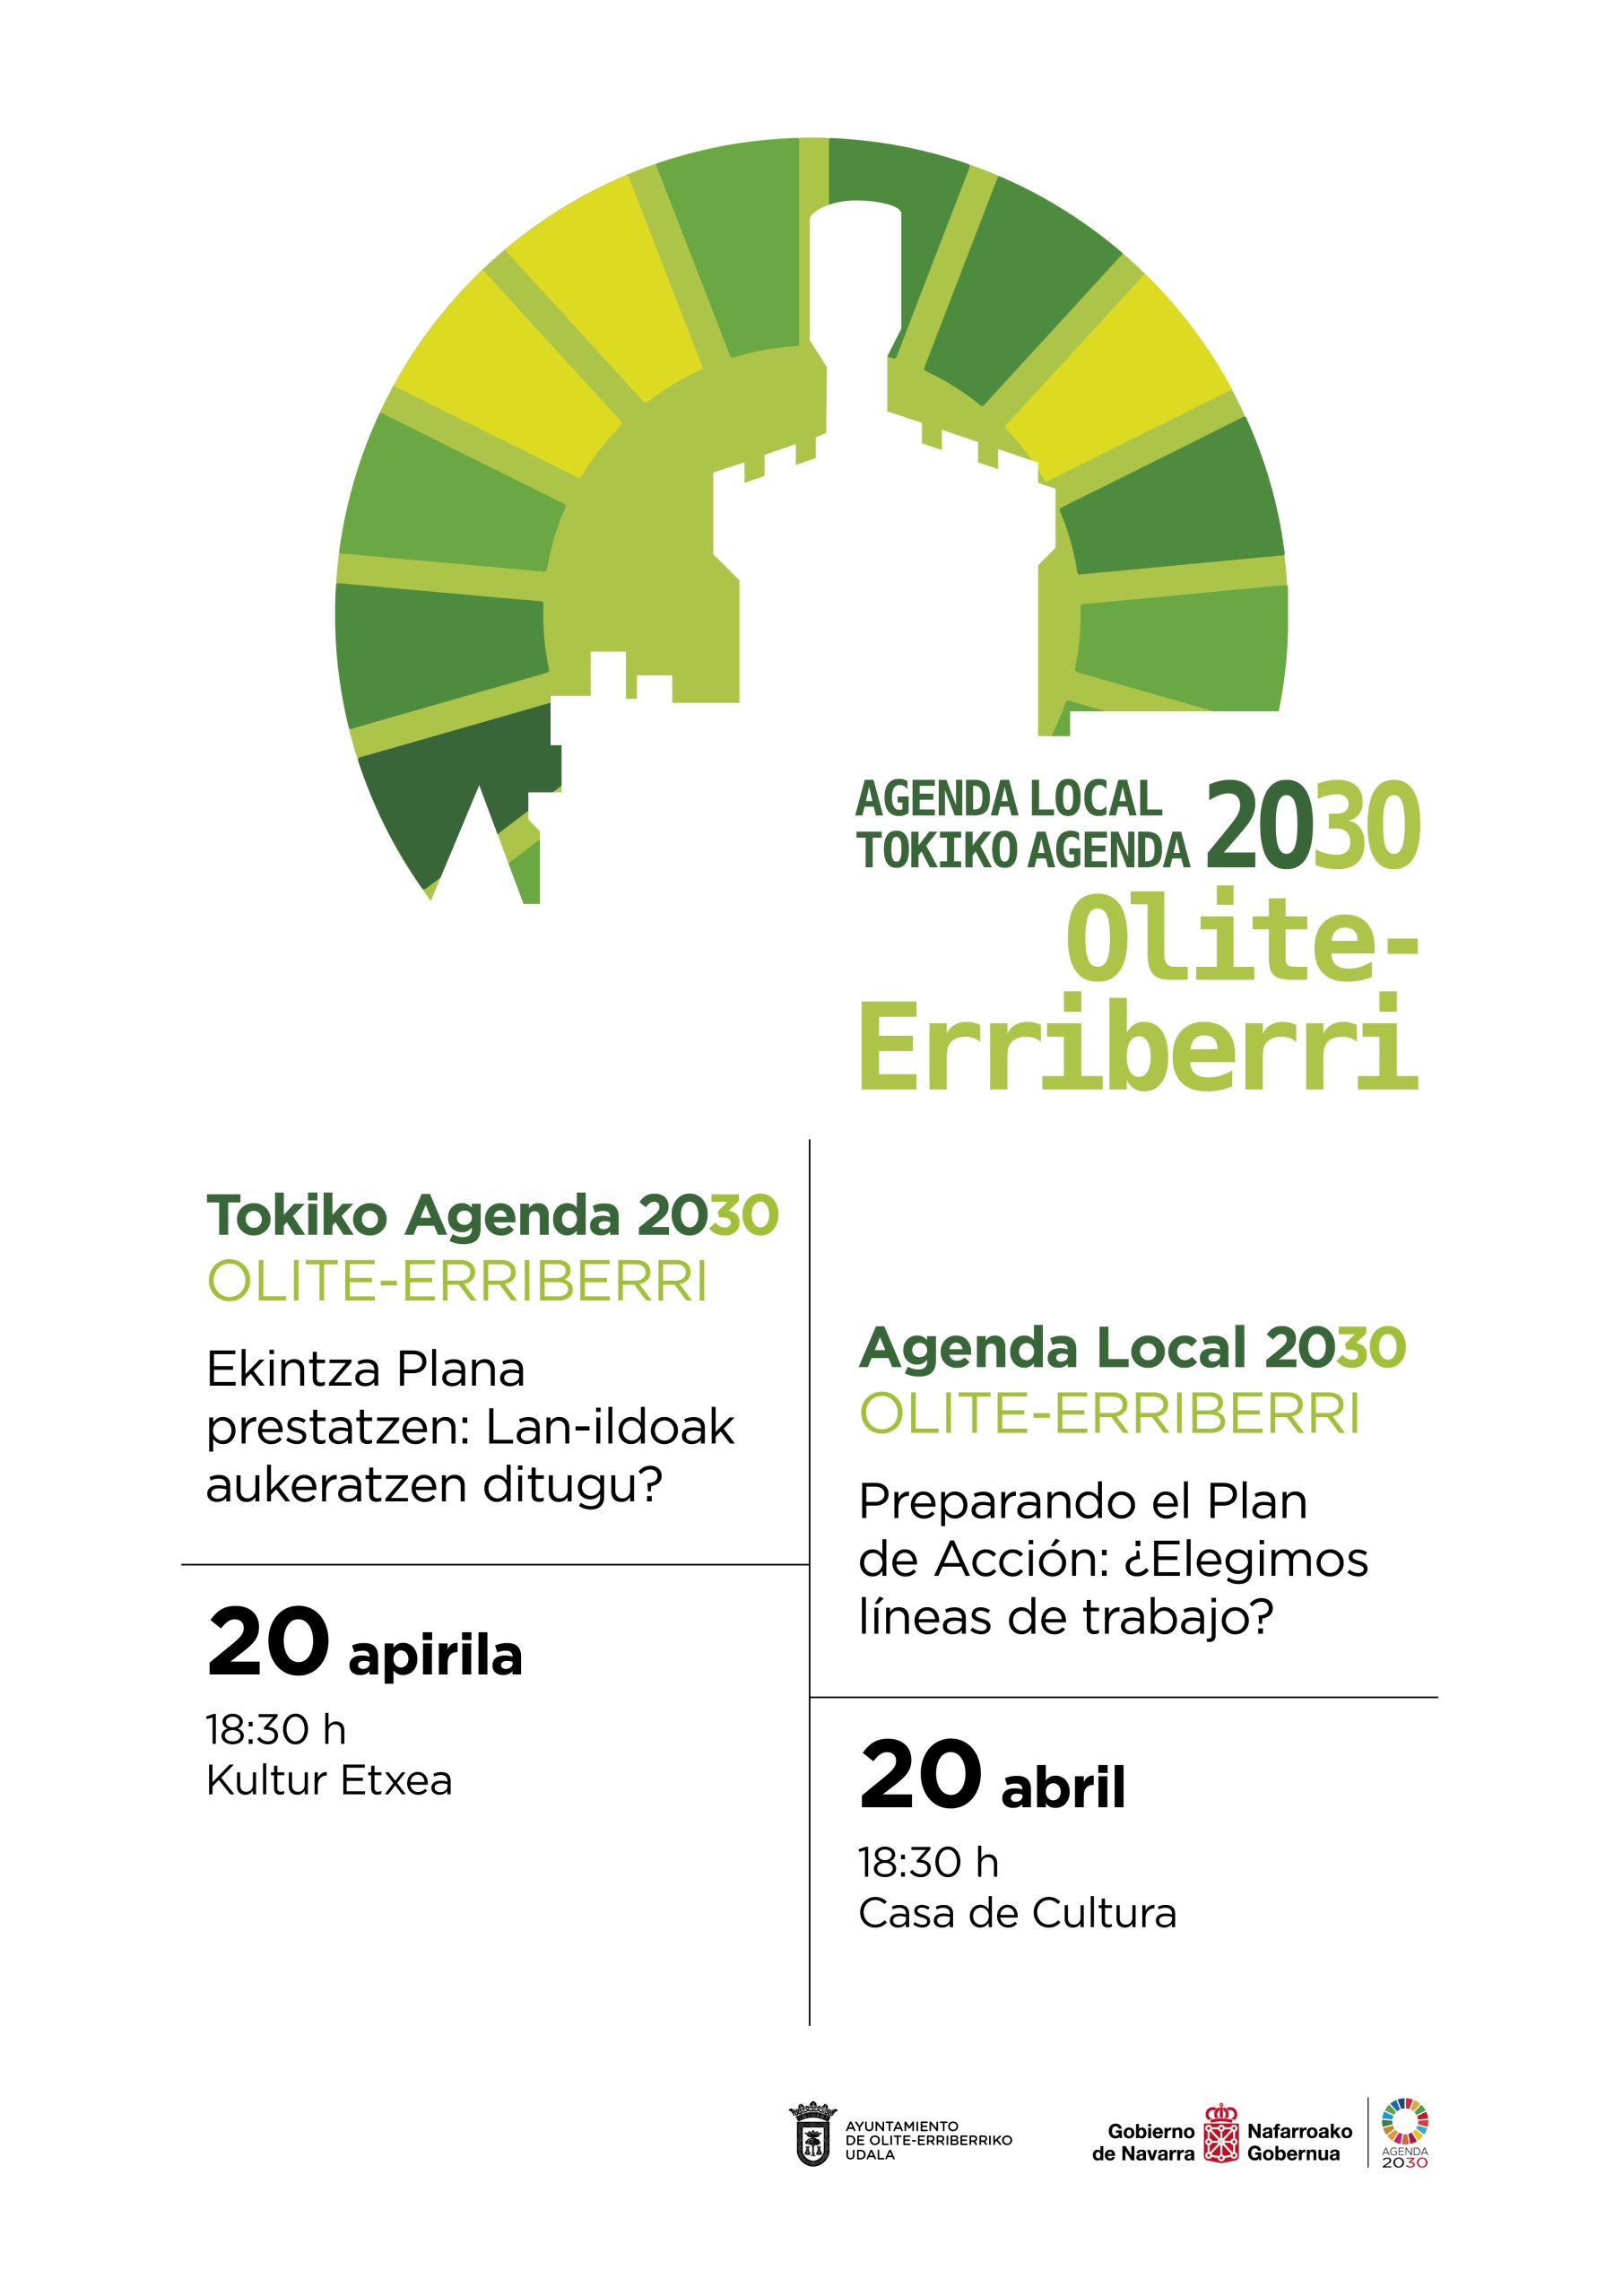 Agenda Local 2030: Preparando el Plan de Acción Jueves 20 de abril